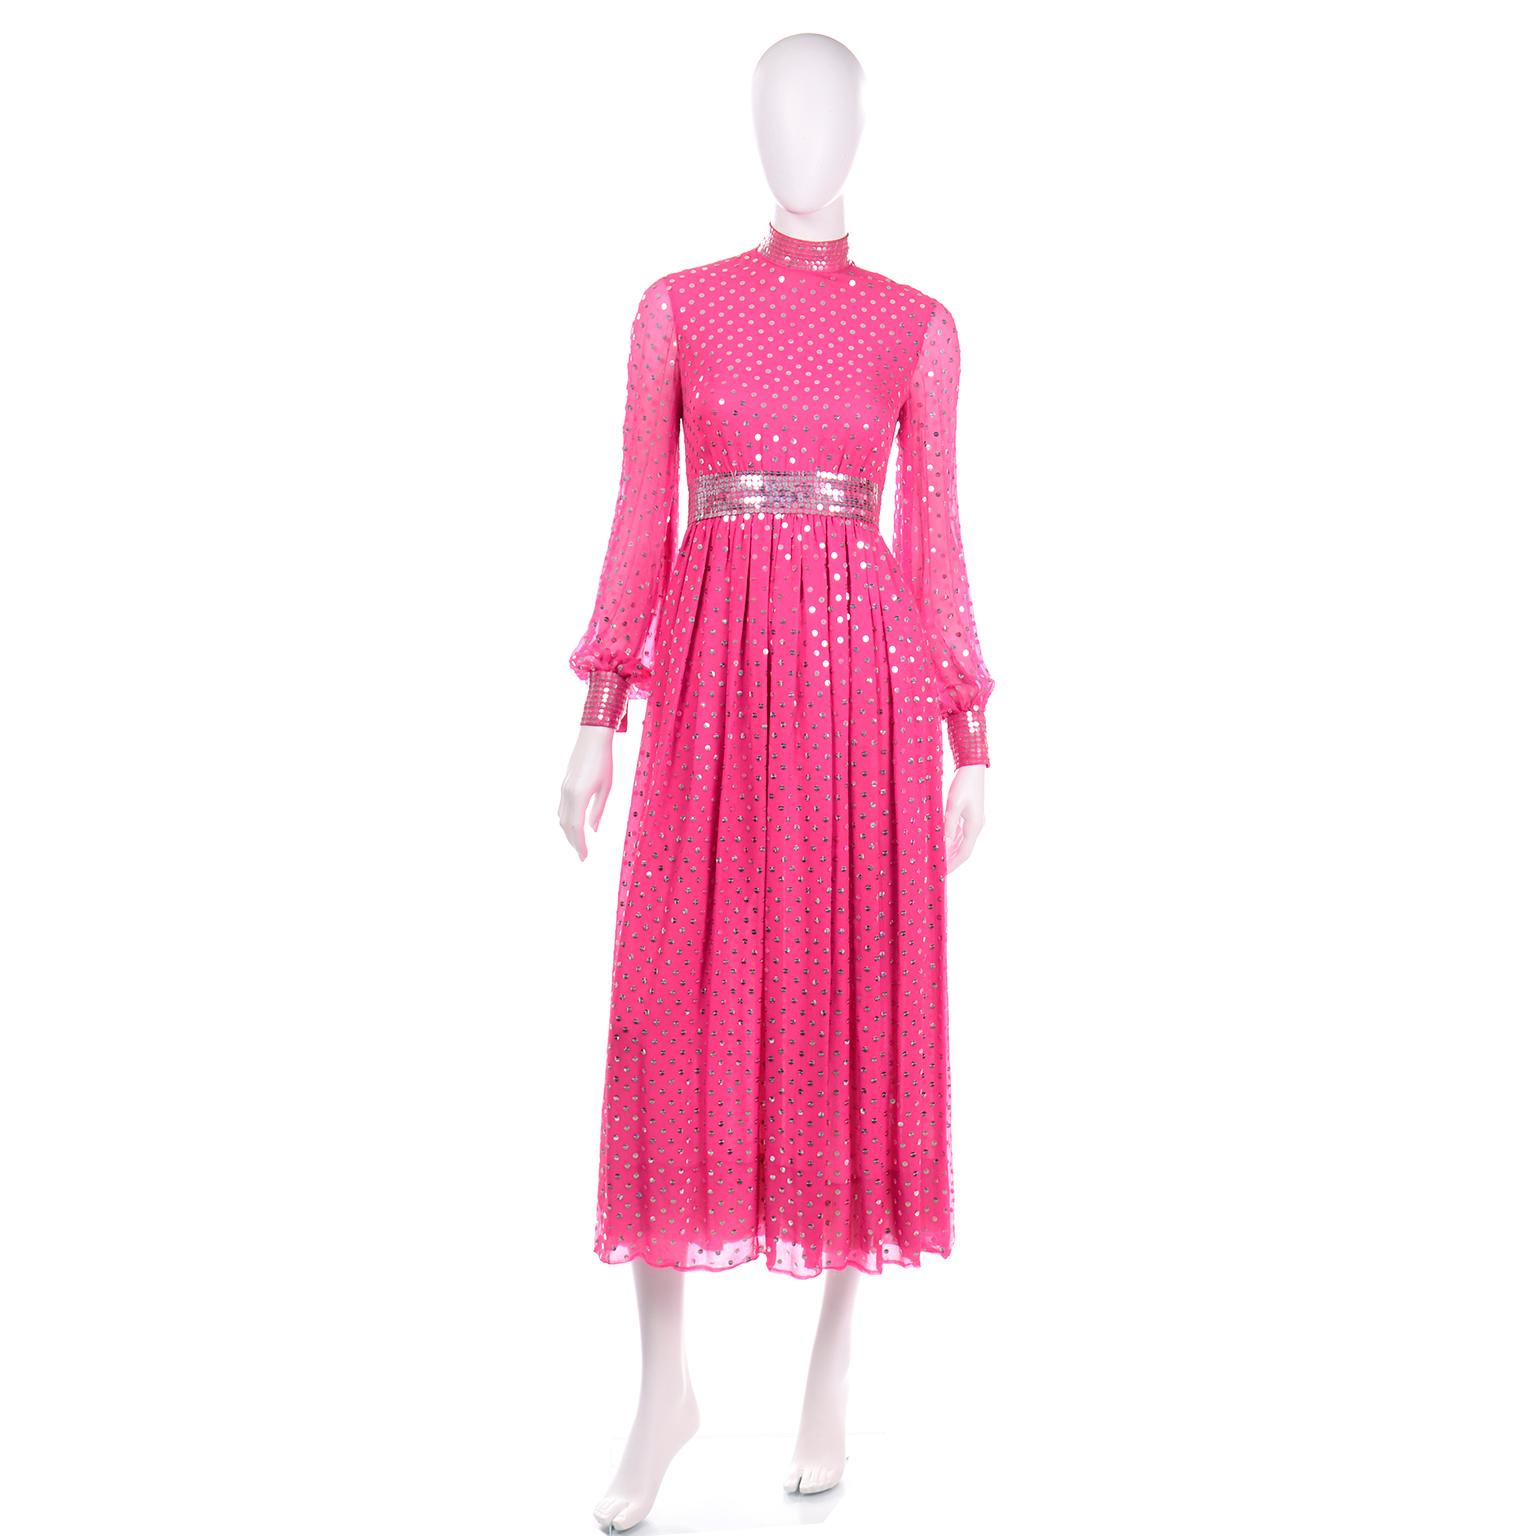 Dieses Vintage-Kleid von Norman Norell aus den 1960er Jahren ist wunderschön verarbeitet und besteht aus rosa Seide, die mit schönen silbernen und klaren Pailletten verziert ist, die einen Polka-Dot-Effekt erzeugen. Das Kleid hat einen hohen